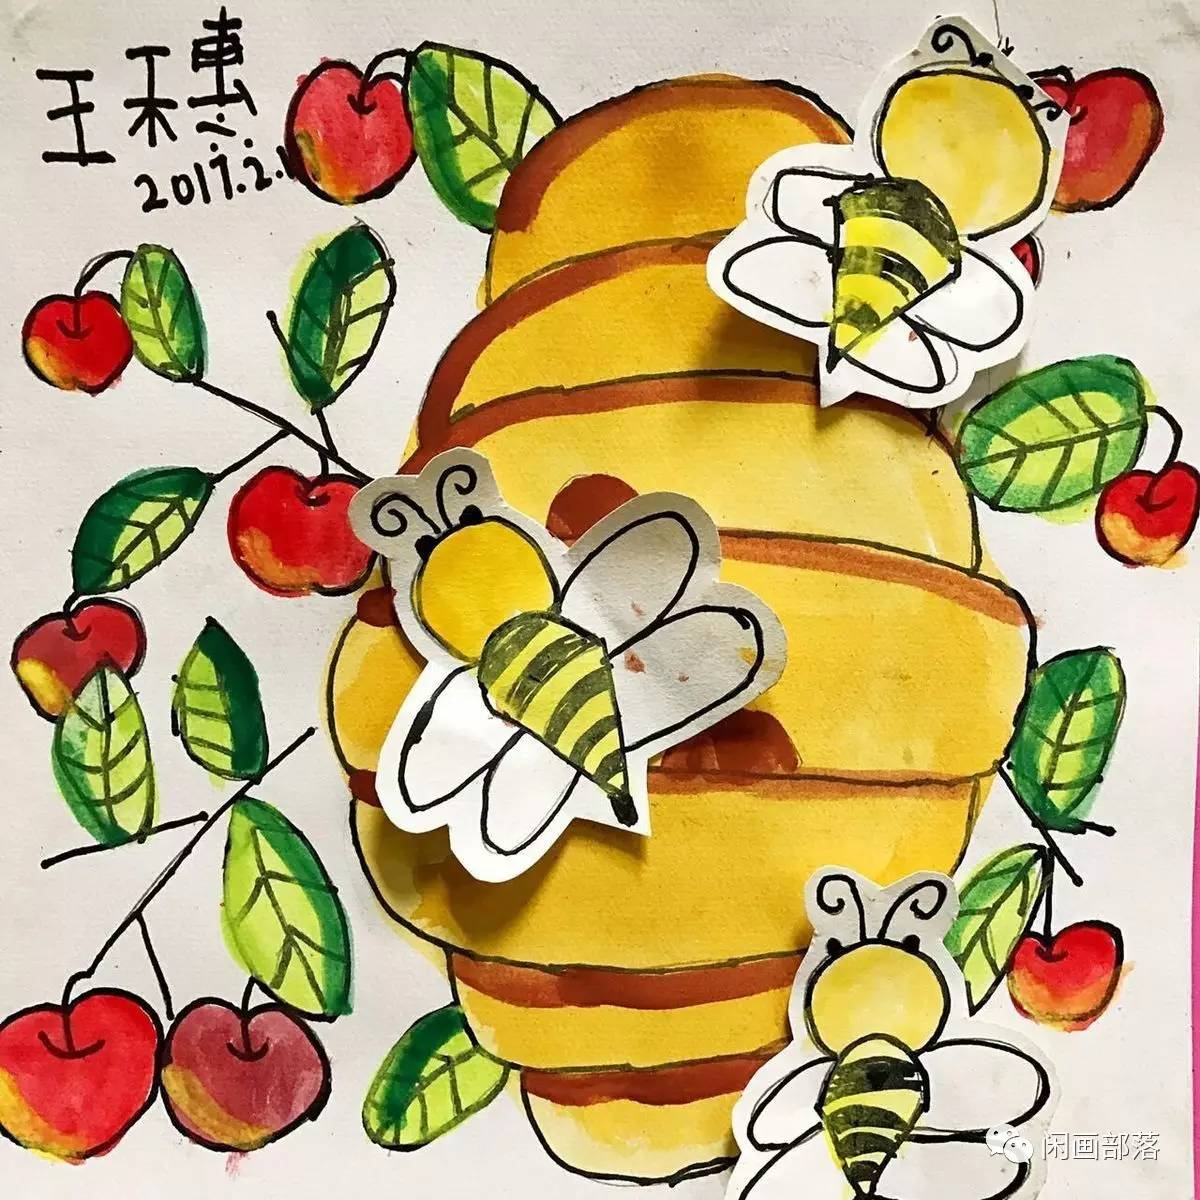 《勤劳的小蜜蜂》sofia 6岁sofia就让蜜蜂停在了一棵苹果树上飞呀飞呀